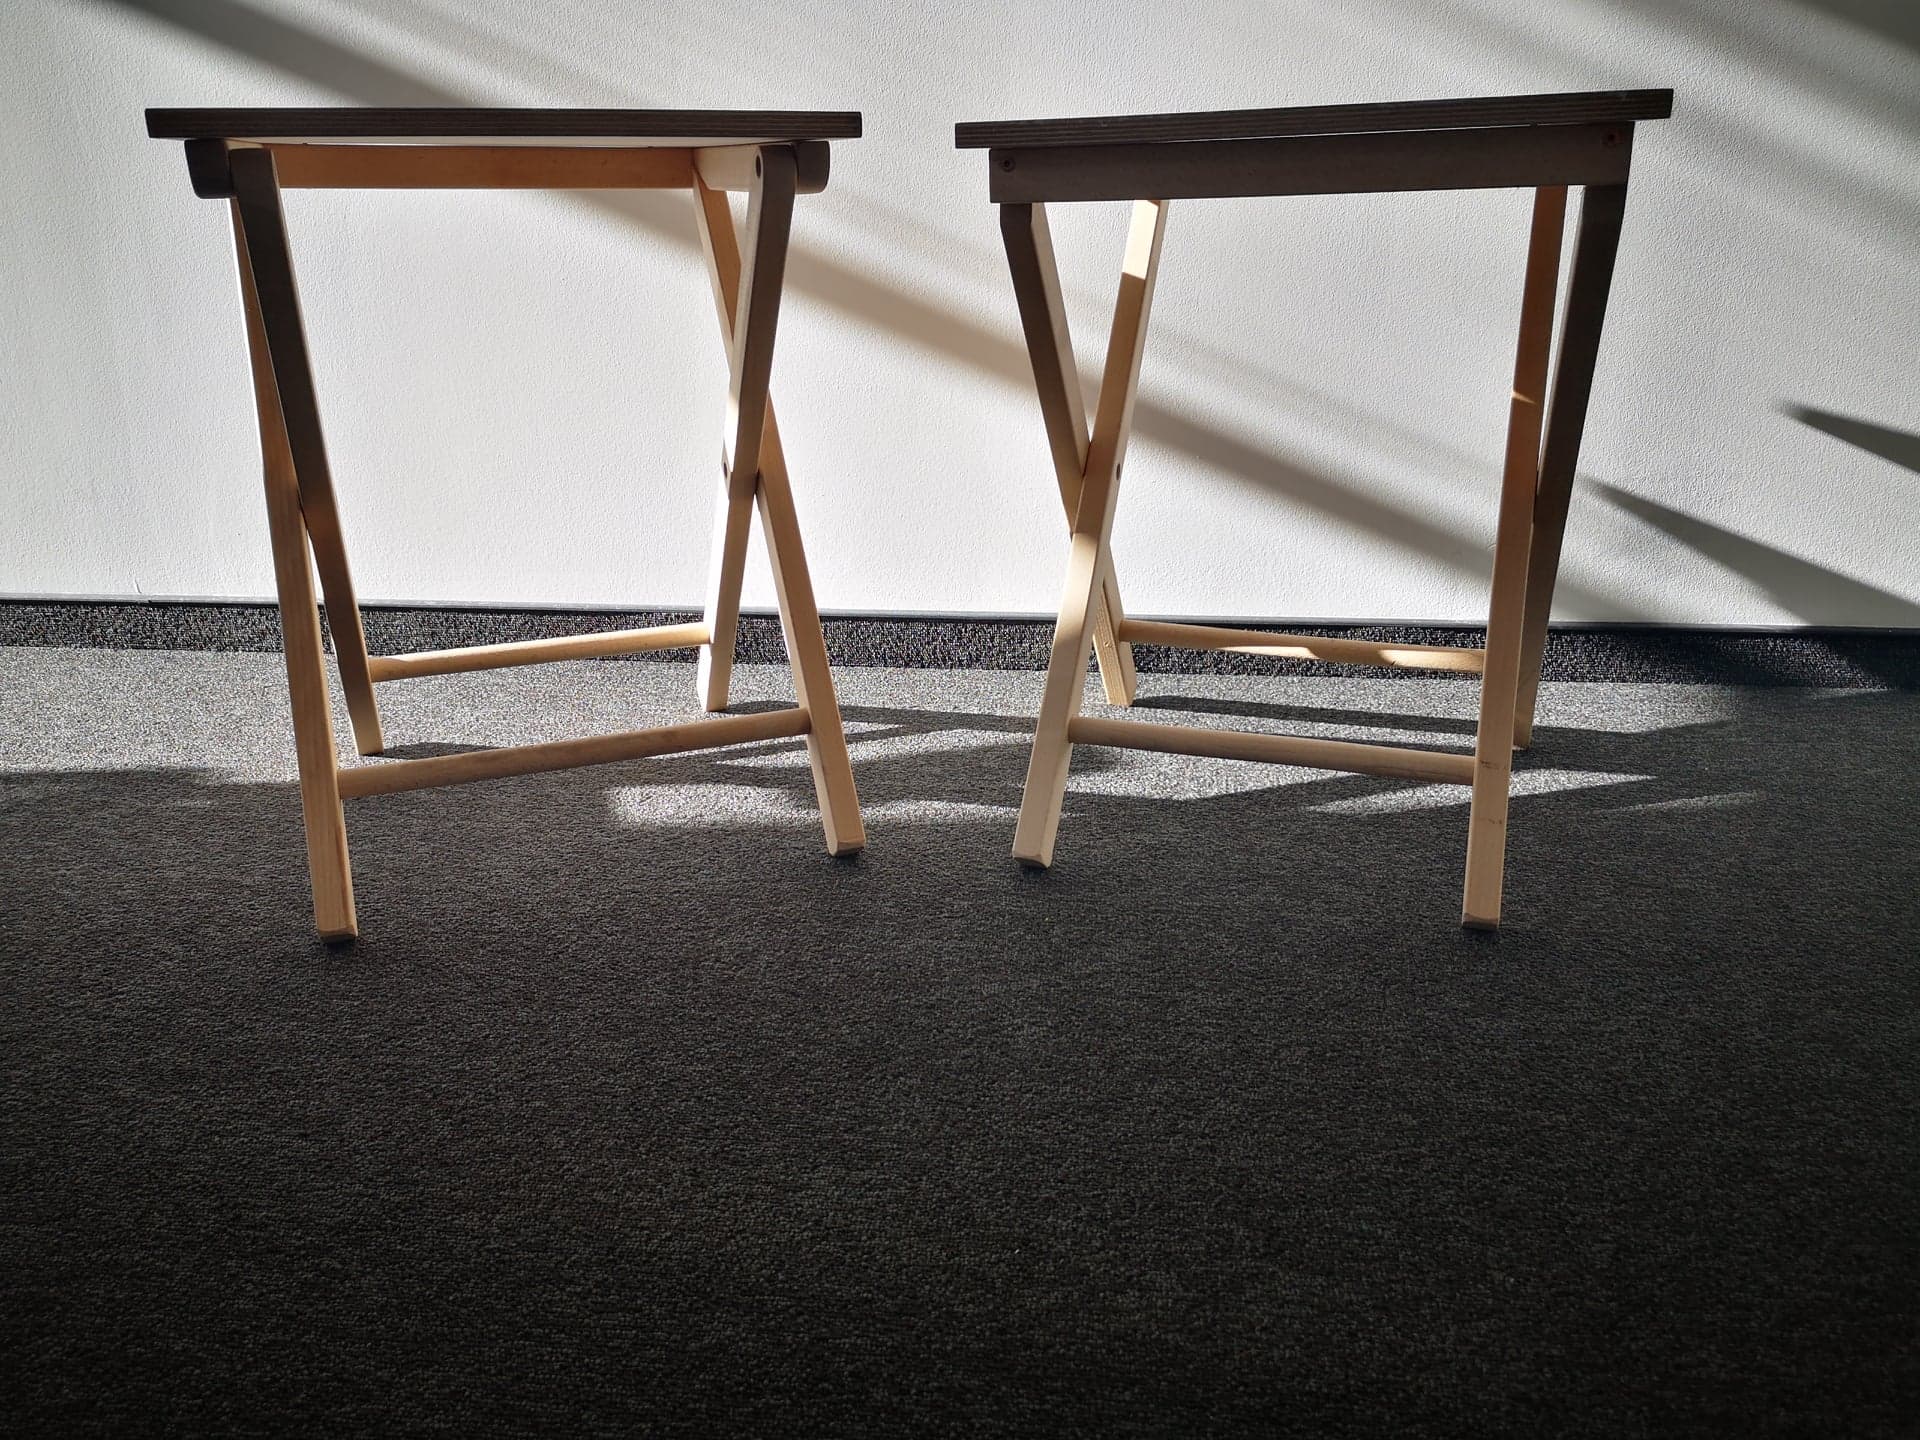 Dwa rozłożone, drewniane stoliki.